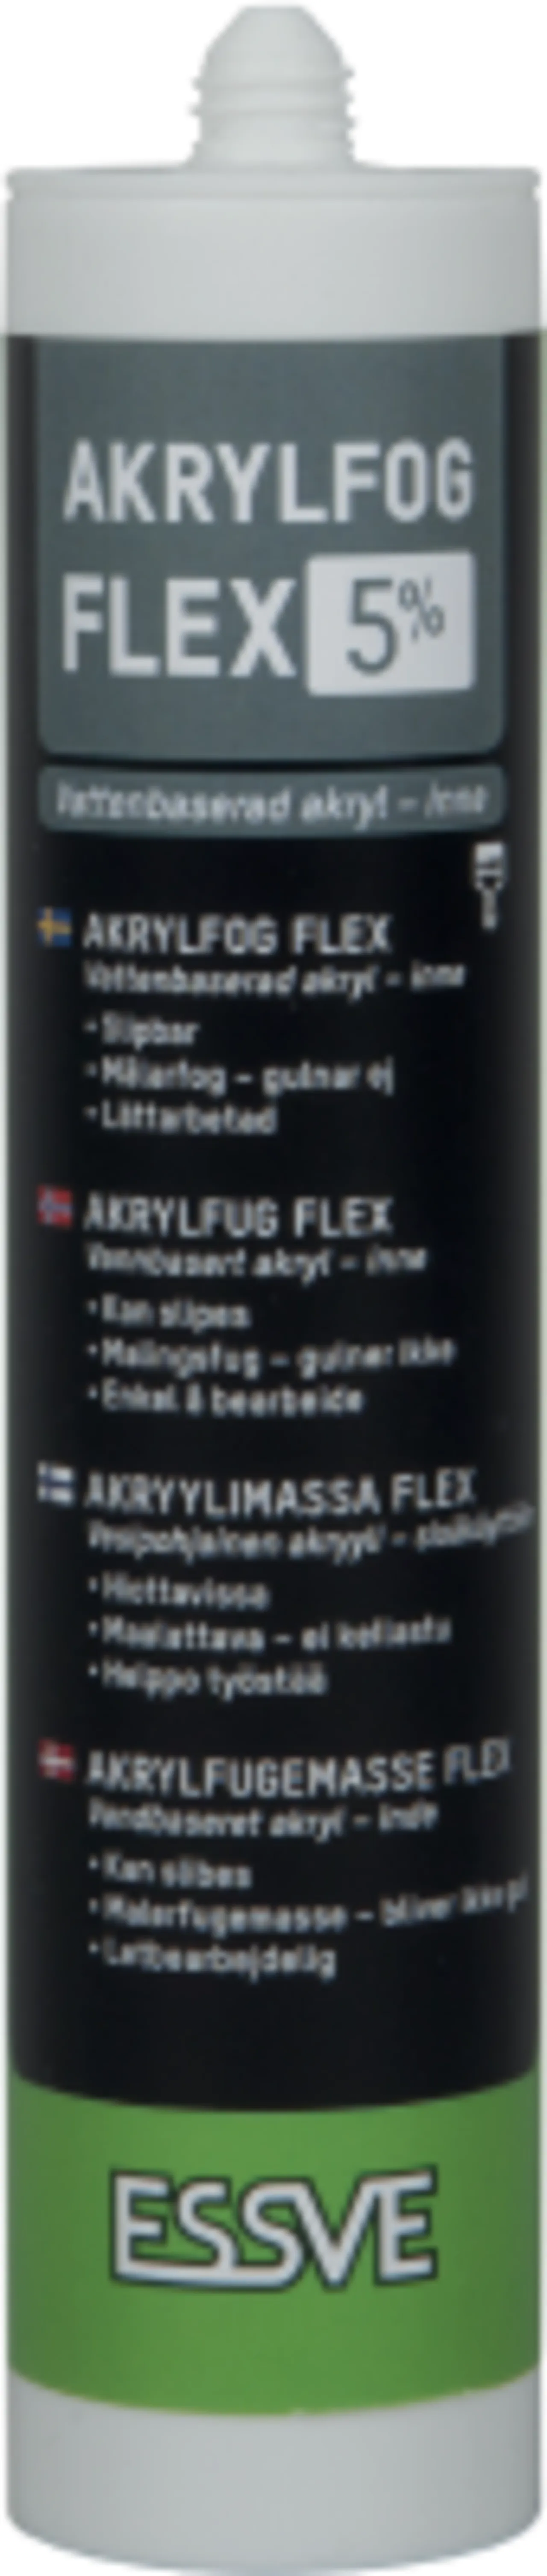 Akryl flex 5 hvit 300mlncs 0603-g80y